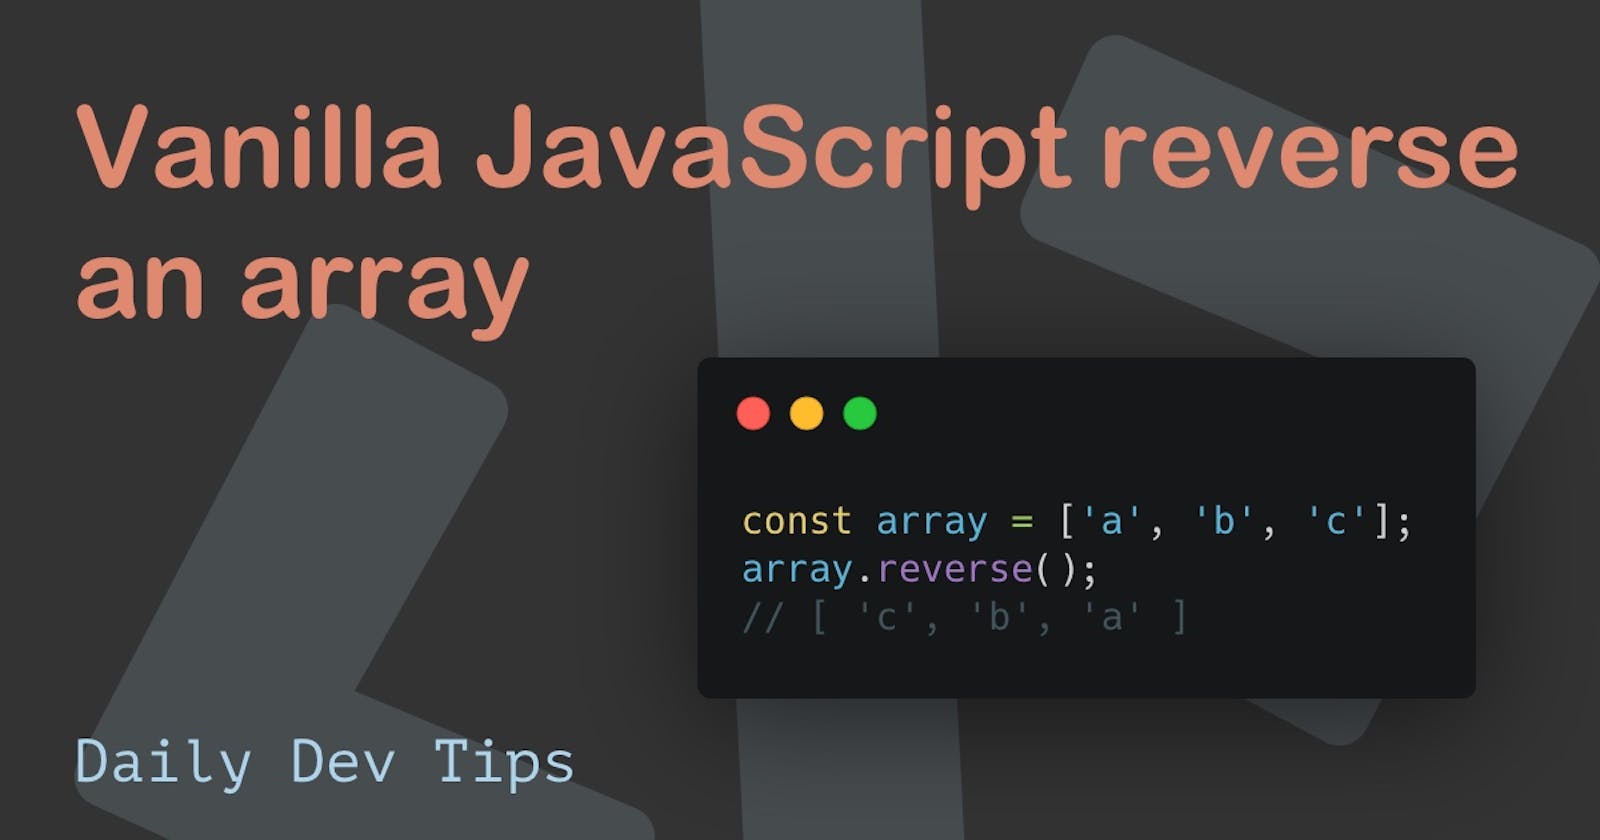 Vanilla JavaScript reverse an array